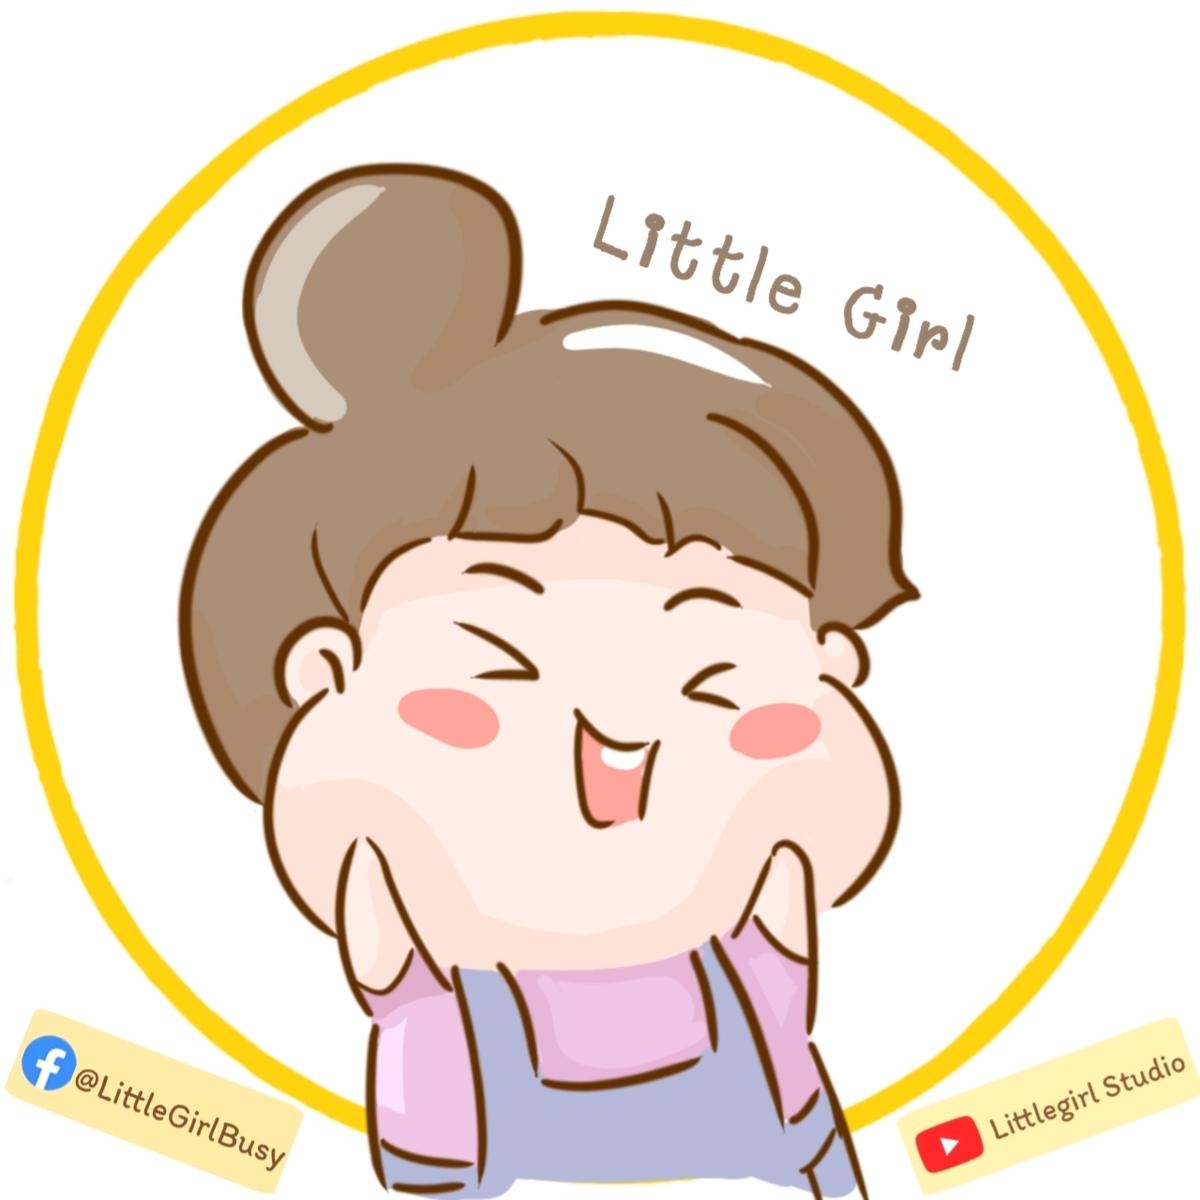 LittleGirlBusy